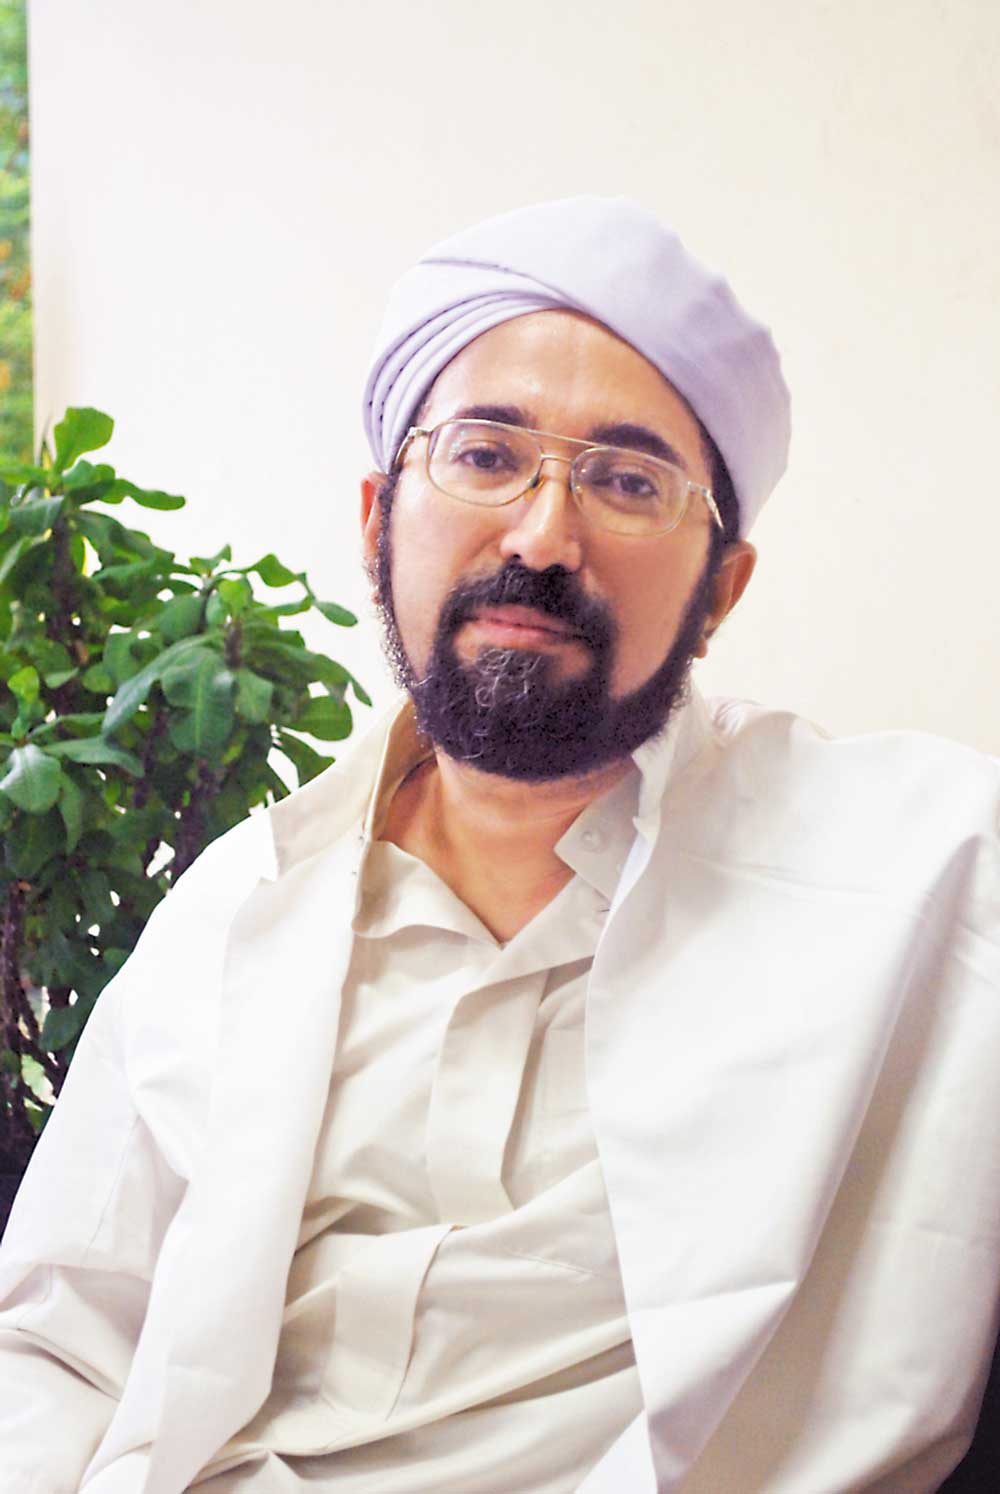 Habib Zaid bin Abdurrahman bin Yahya - Pustaka Pejaten